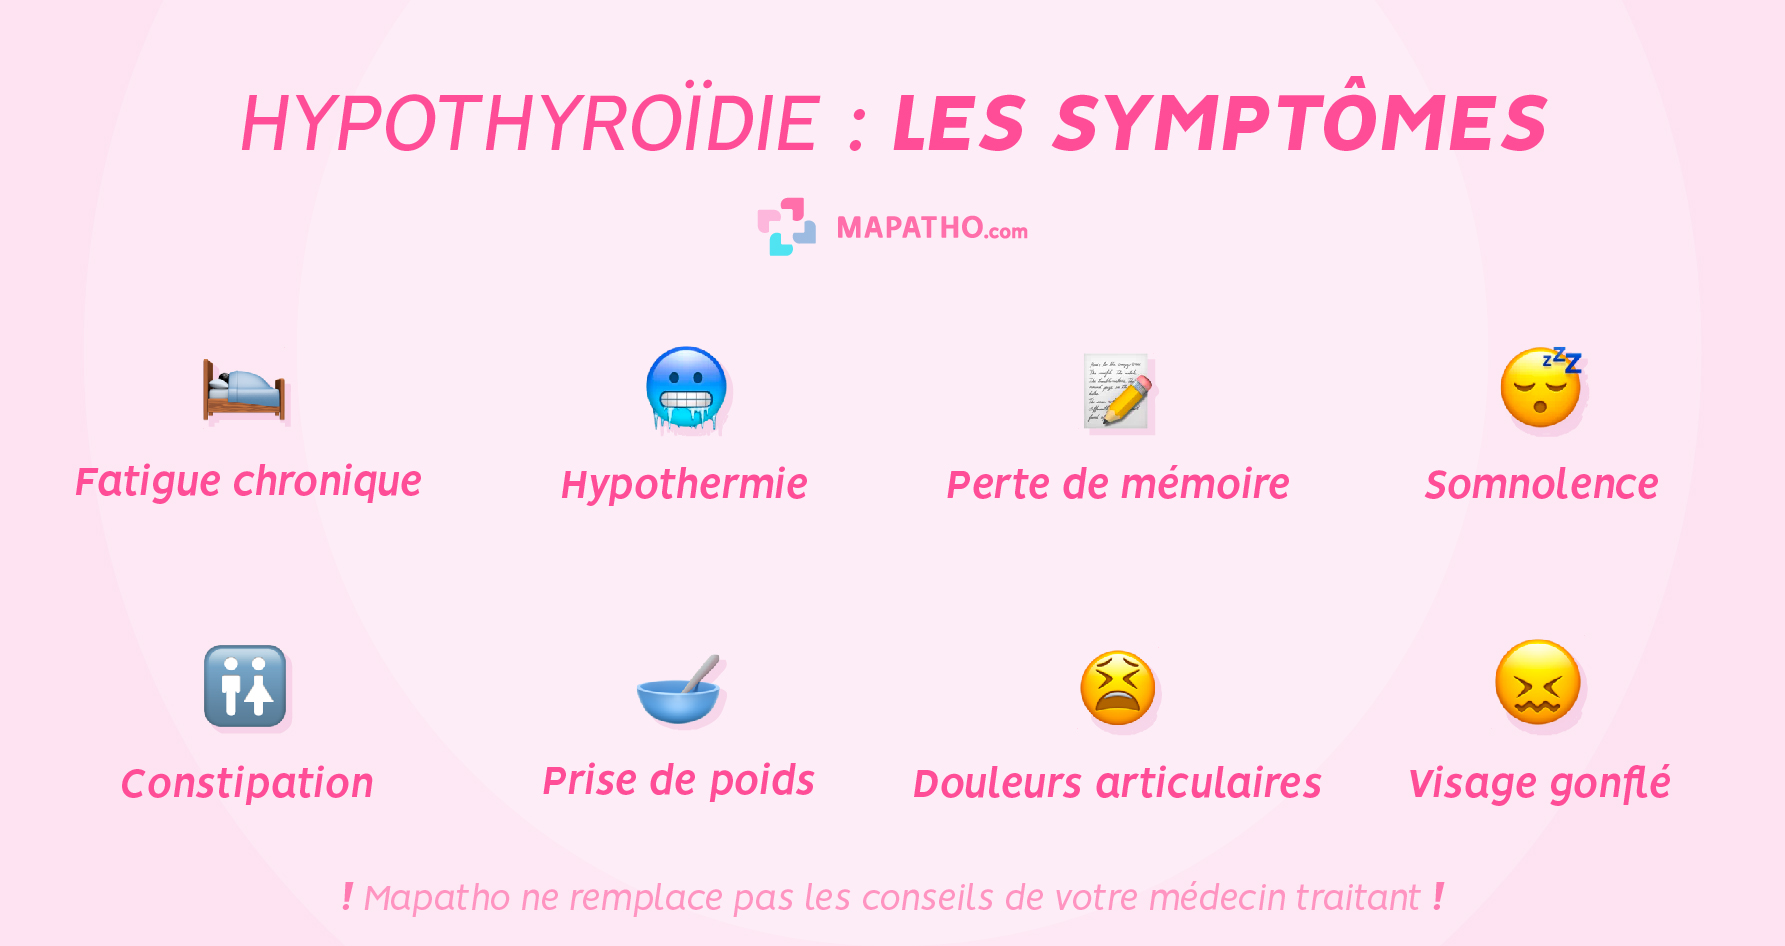 Les symptomes de l'Hypothyroidie